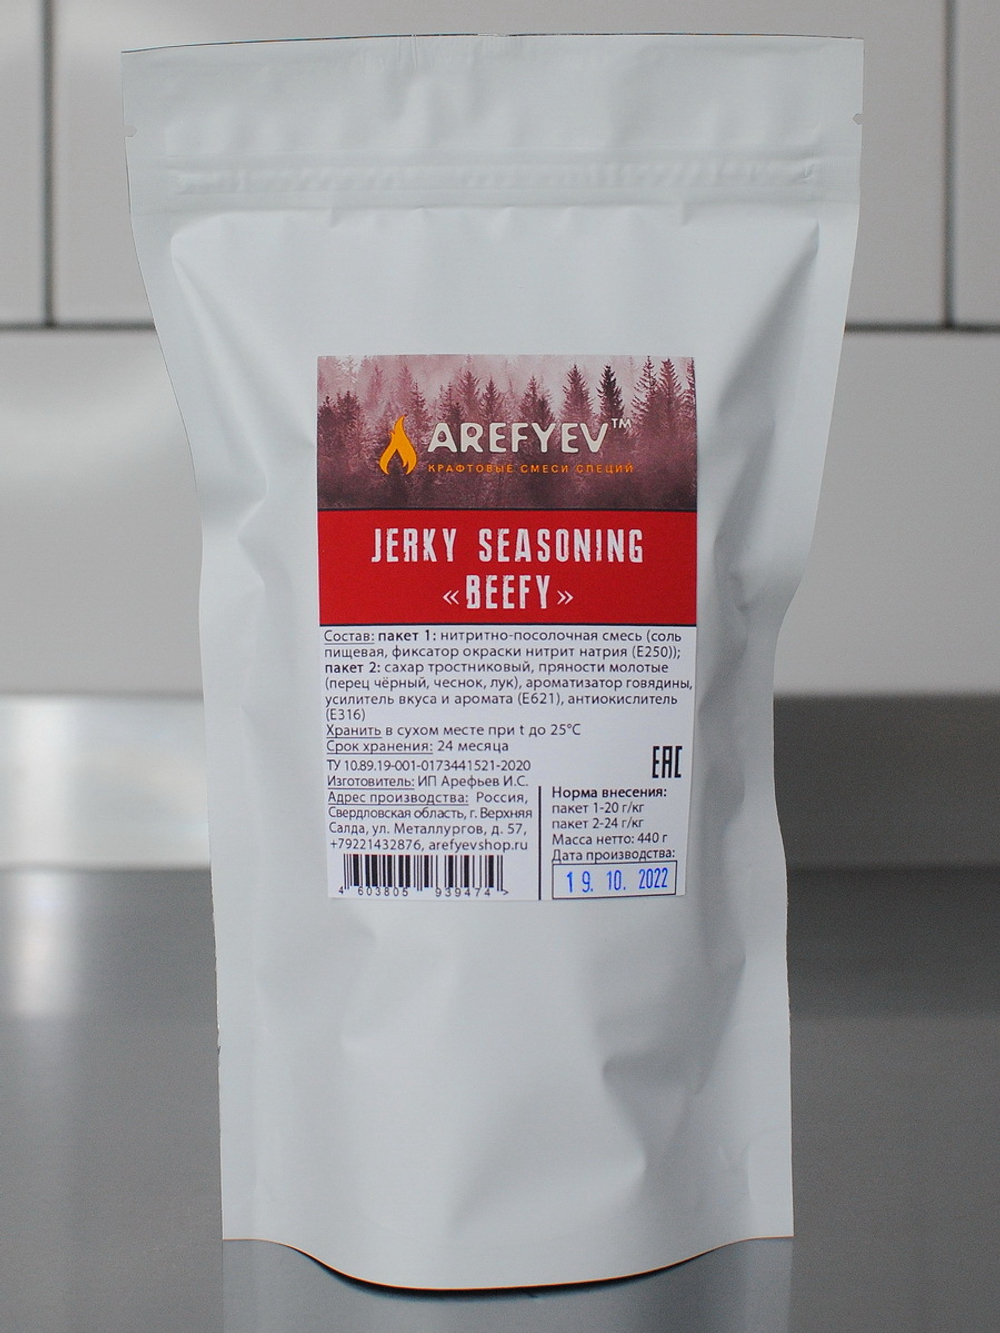 Jerky Seasoning "Beefy". Смесь для джерки.